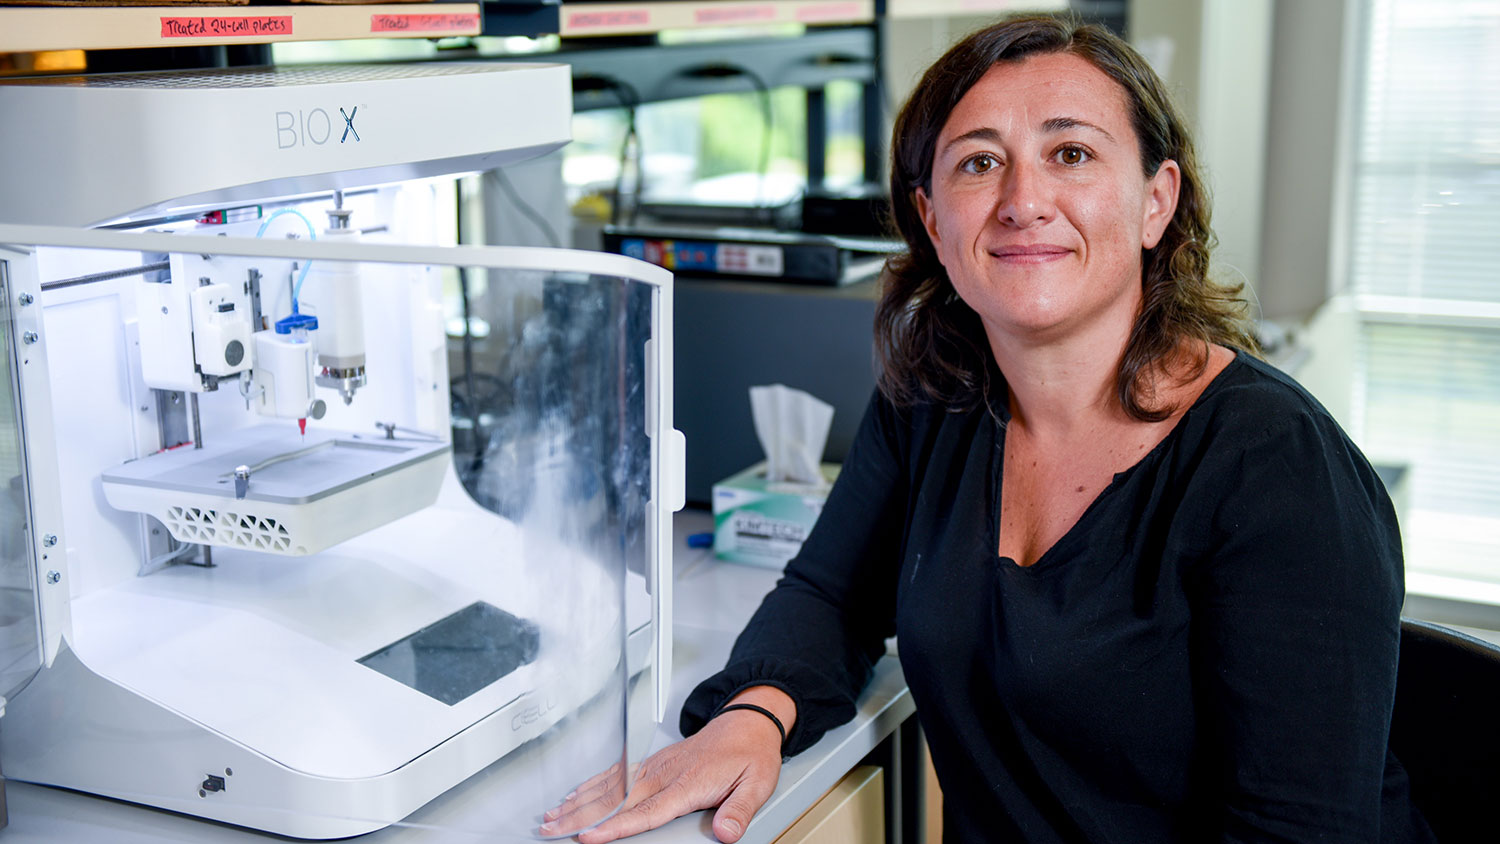 罗斯·索珊尼坐在她用于研究的3D生物打印机旁边